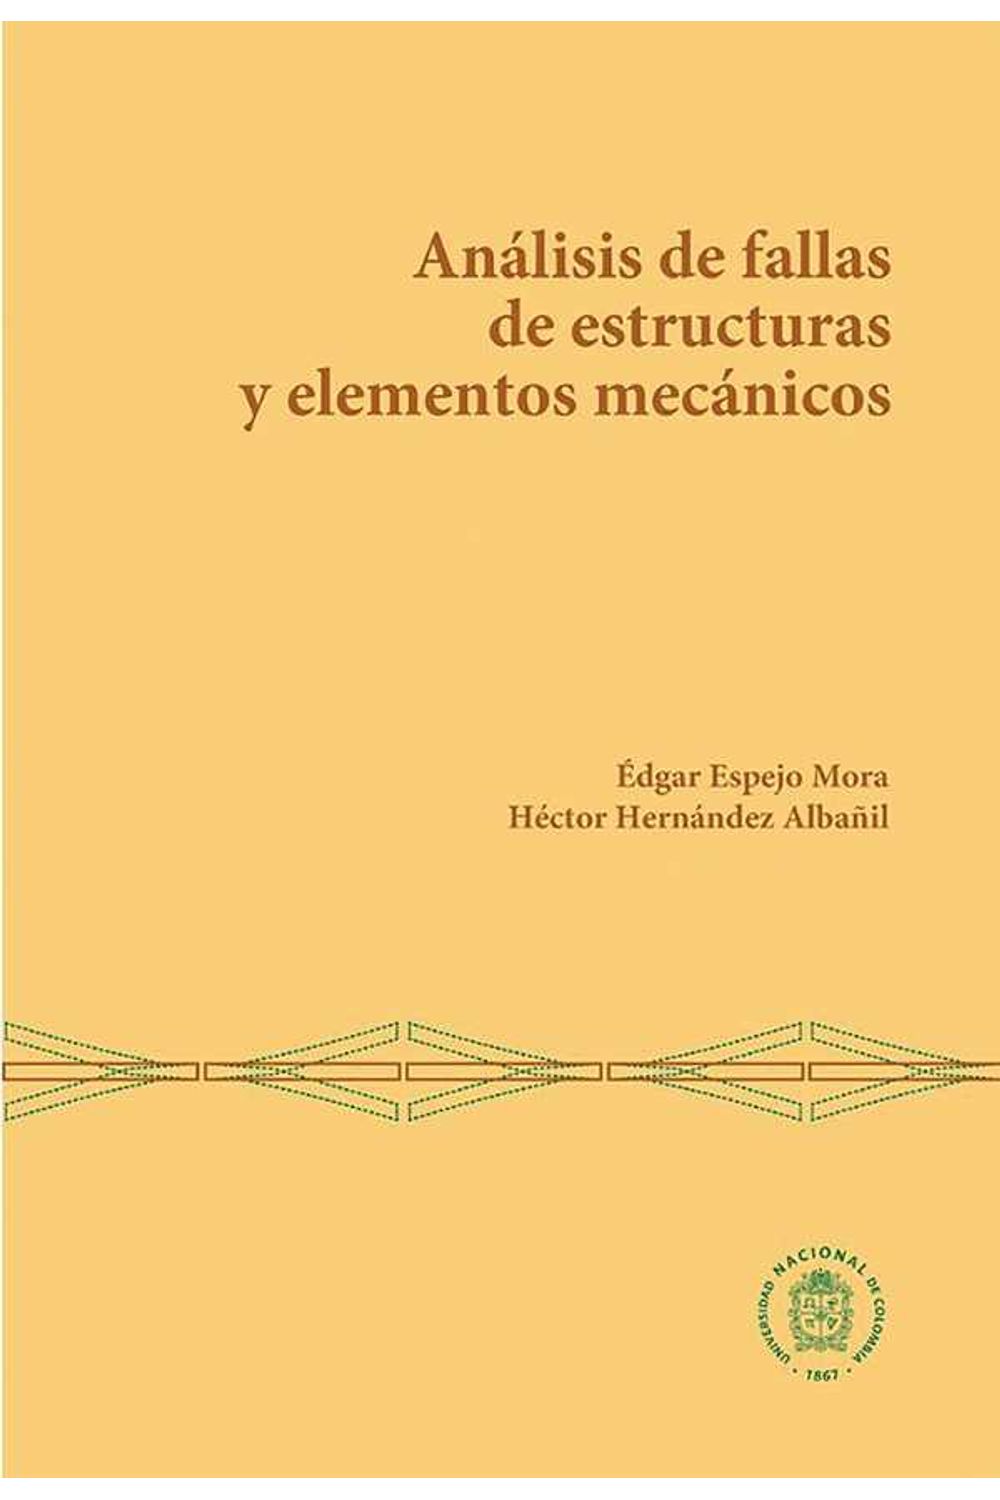 bw-anaacutelisis-de-fallas-de-estructuras-y-elementos-mecaacutenicos-universidad-nacional-de-colombia-9789587838619